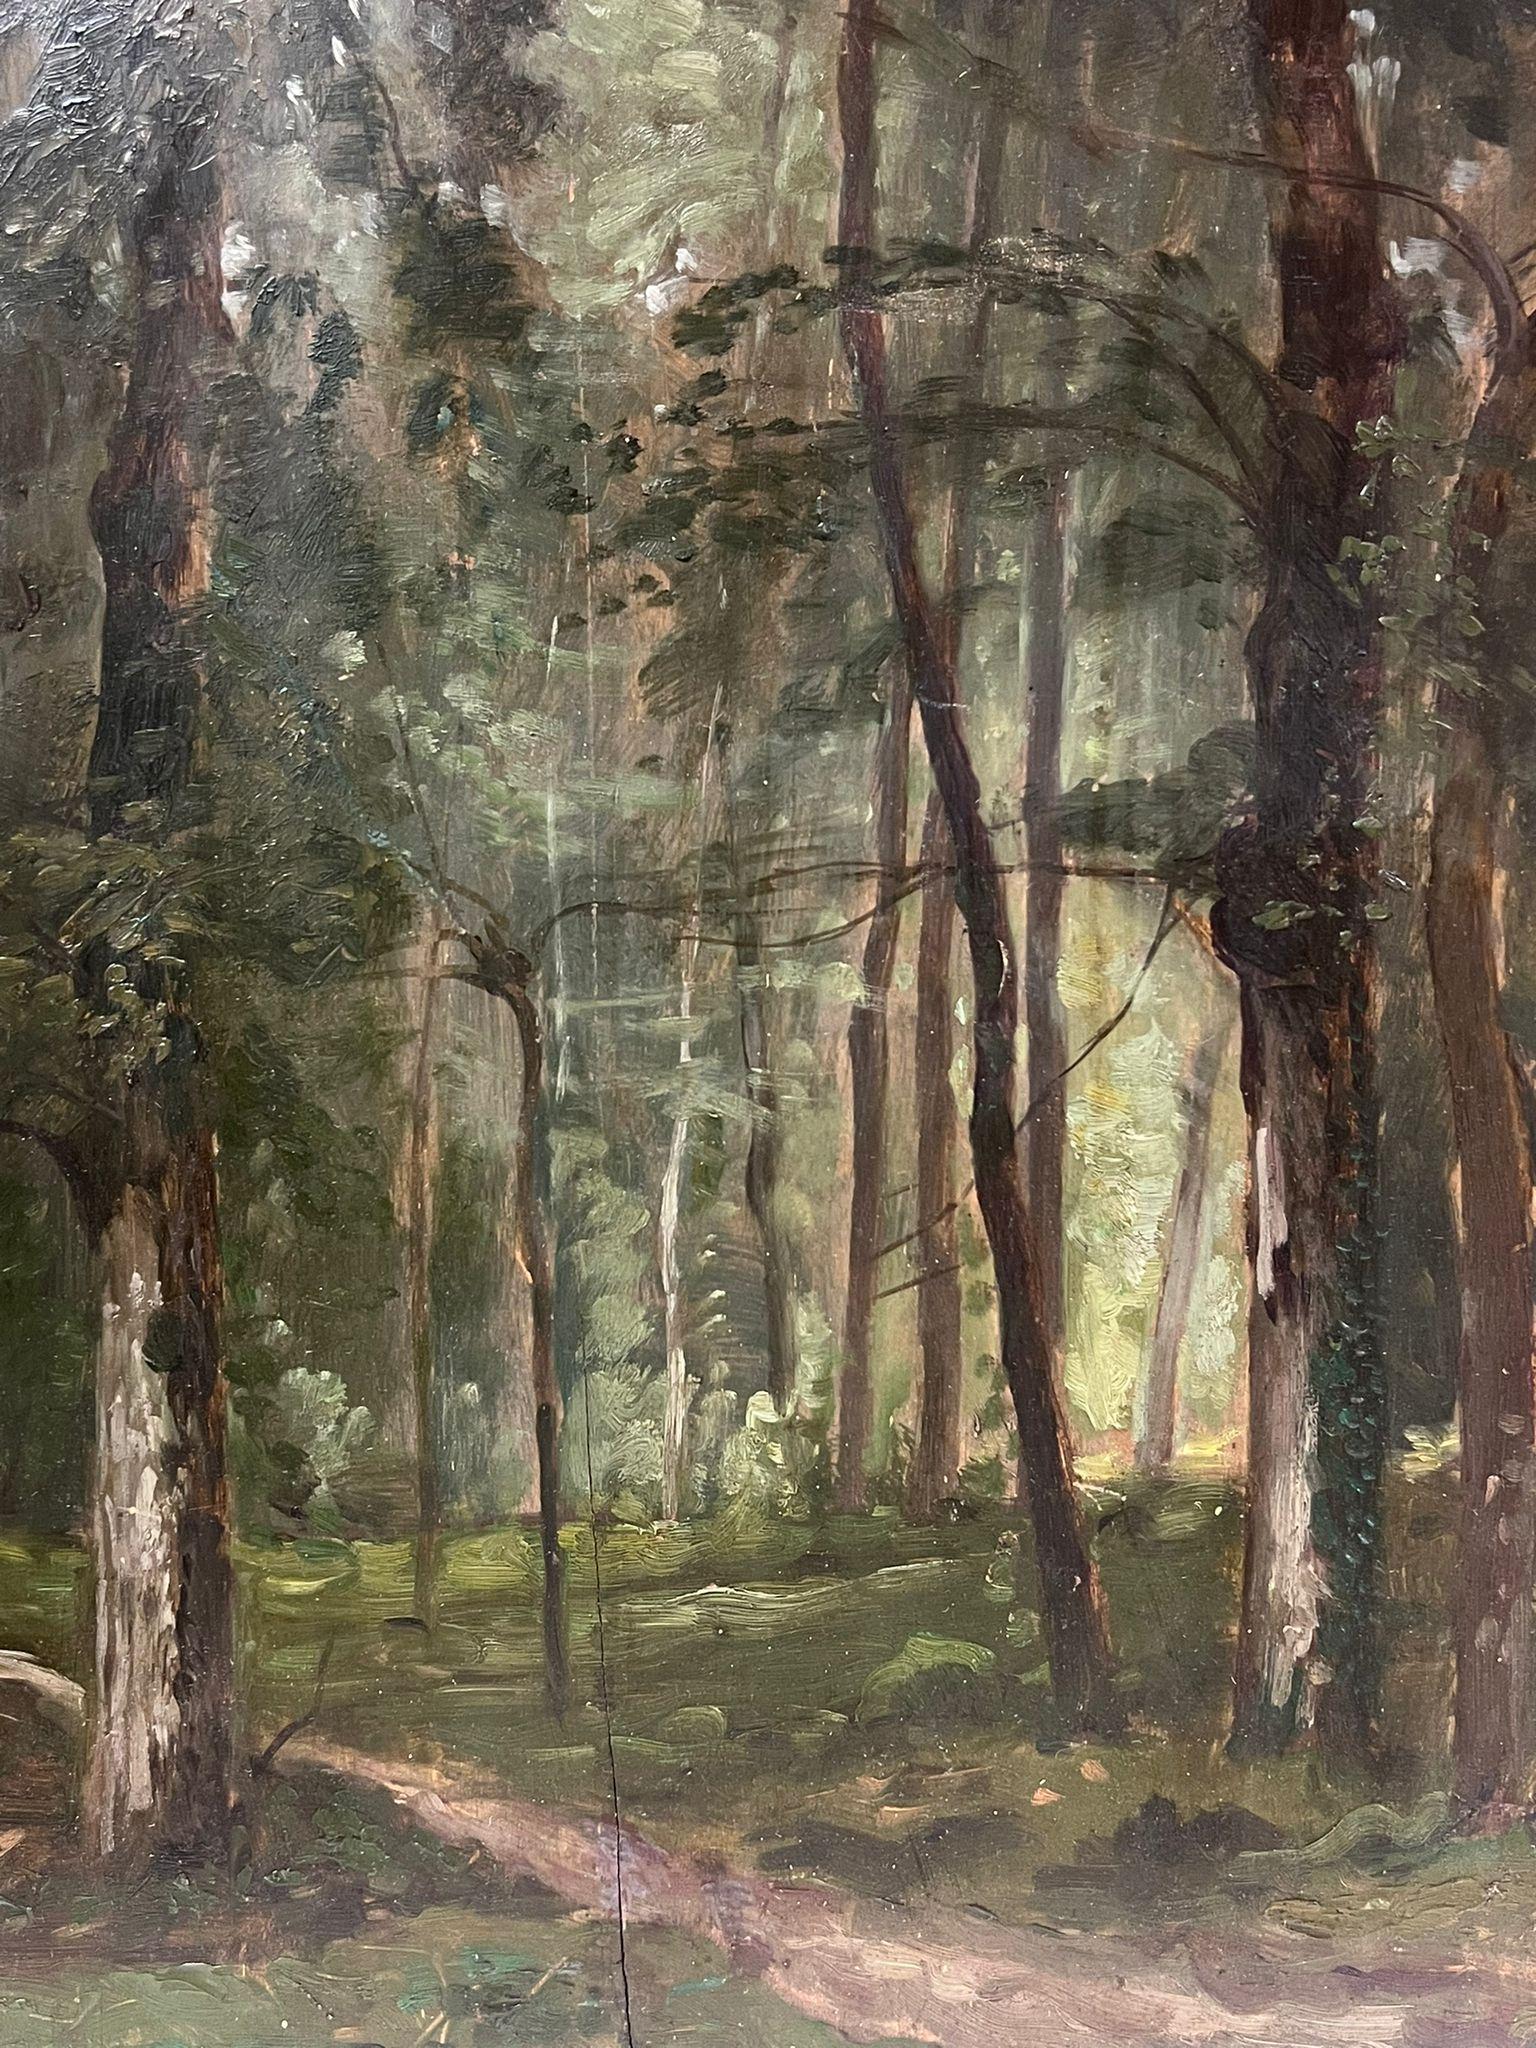 Fine huile de Barbizon du 19ème siècle sur bois cintré Forêt Glade Forest - École de Barbizon Painting par circle of Corot